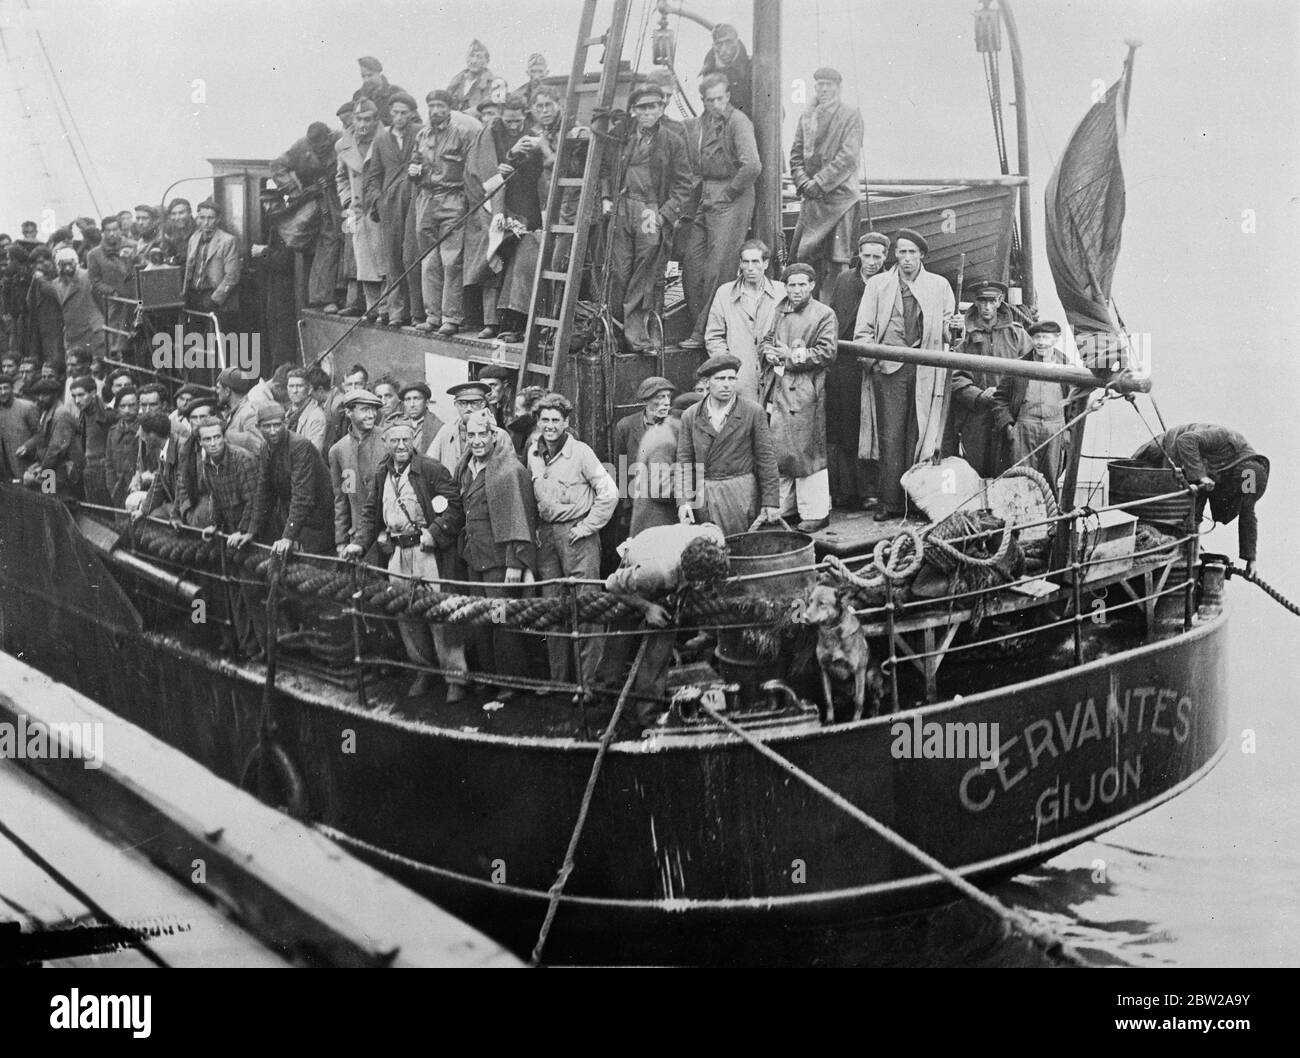 I rifugiati di milizia provenienti da Gijon arrivano in Francia. Dopo la caduta di Gijon alle truppe di Gen Franco, sono arrivati nei porti francesi carichi di rifugiati. Una nave, i Cervantes, trasportava un certo numero di miliziani. Spettacoli fotografici, i miliziani spagnoli a bordo dei 'Cervantes' all'arrivo a Pauillac, Francia. 24 ottobre 1937 Foto Stock